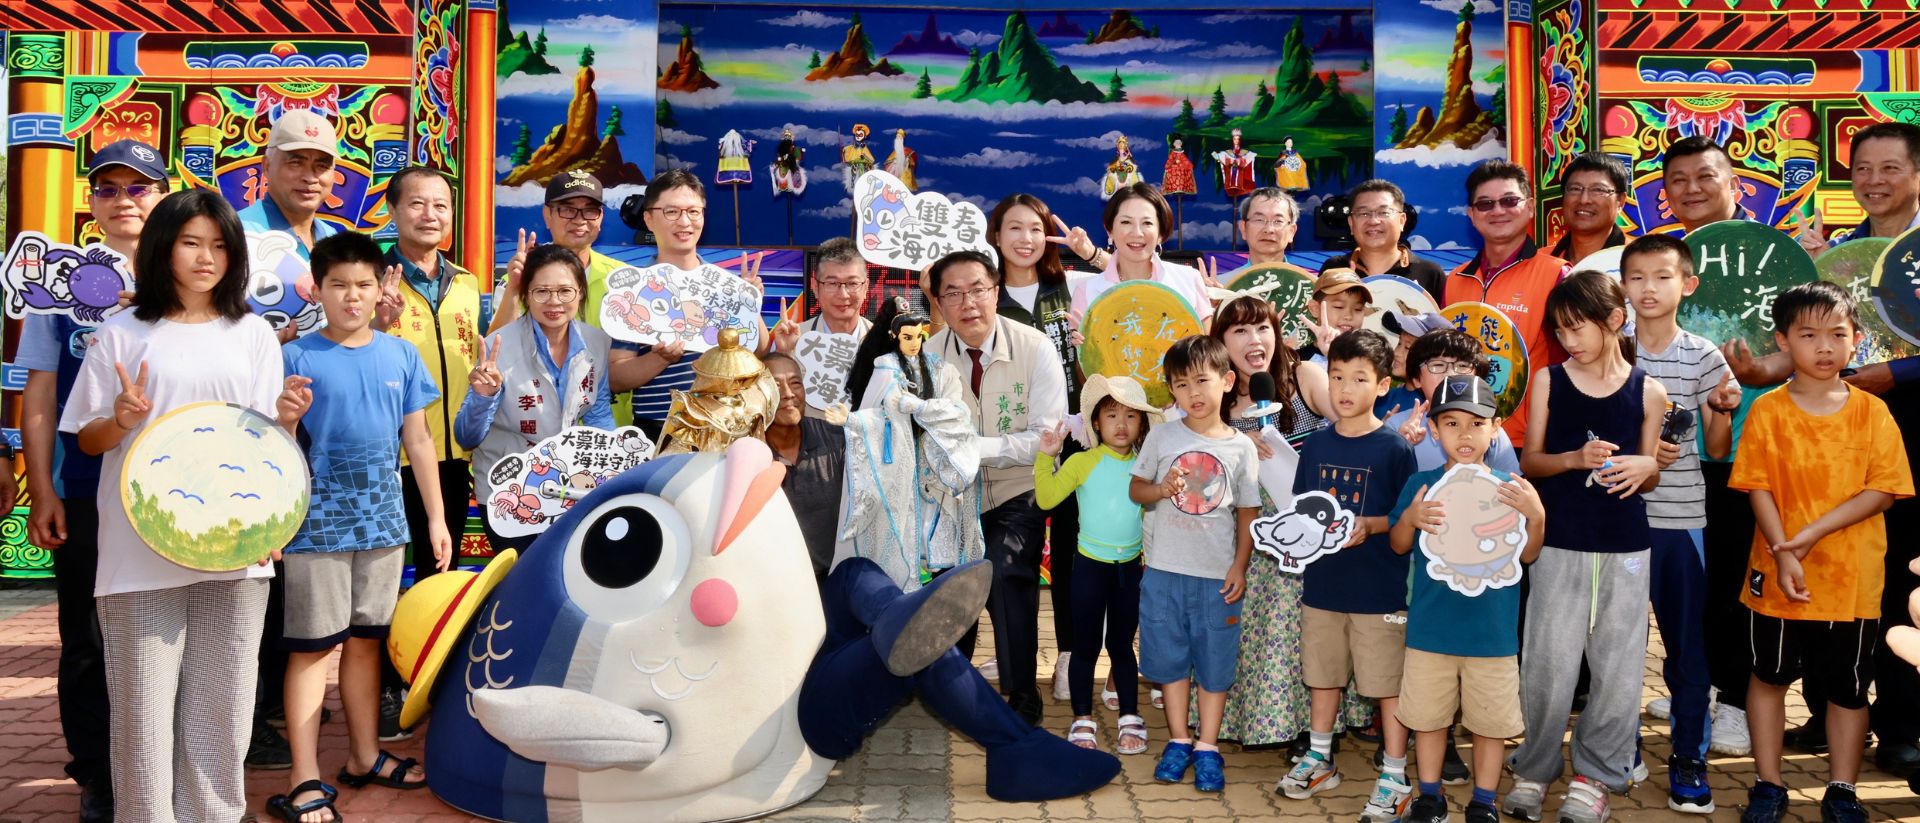 臺南市政府觀光旅遊局吉祥物魚頭君及現場與會小朋友開心參與